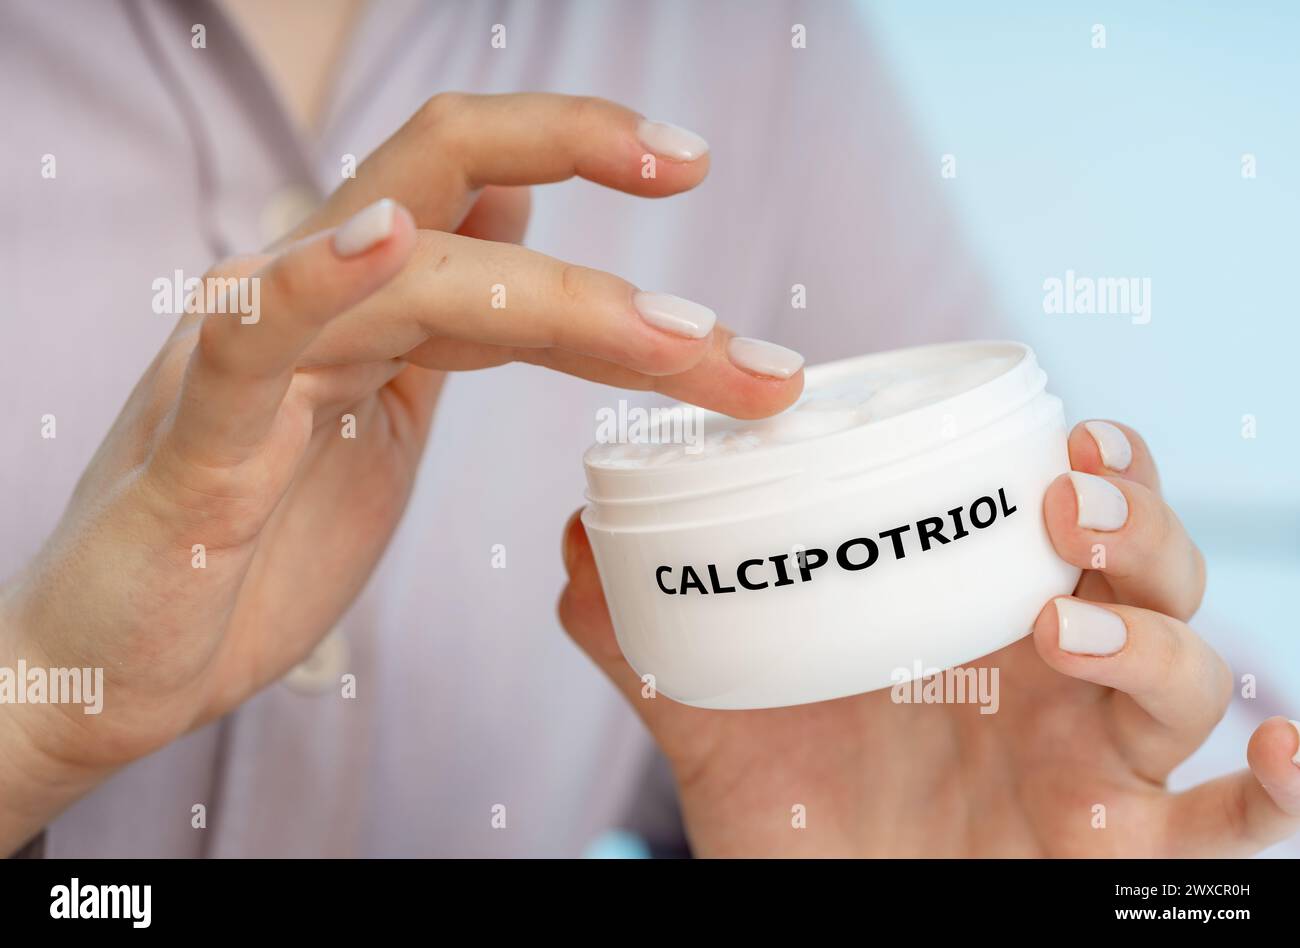 Calcipotriol-medizinische Creme, konzeptuelles Bild. Eine synthetische Form von Vitamin D, die in Creme zur Behandlung von Psoriasis verwendet wird, indem das Wachstum von Hautzellen verlangsamt wird. Stockfoto